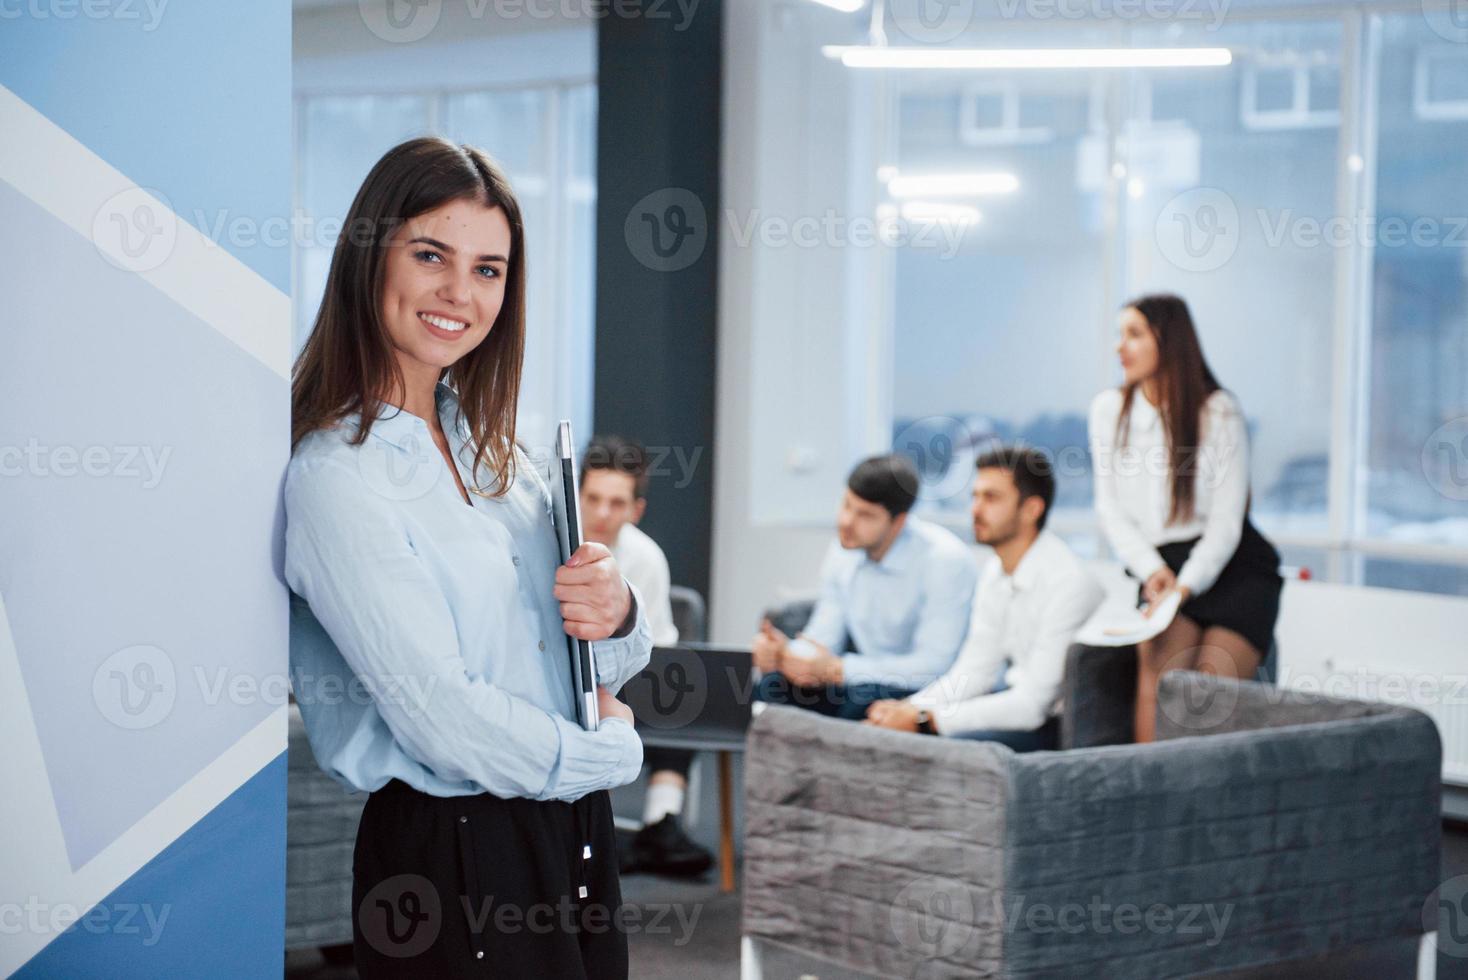 bellissimo interno moderno. ritratto di giovane ragazza in piedi in ufficio con i dipendenti in background foto